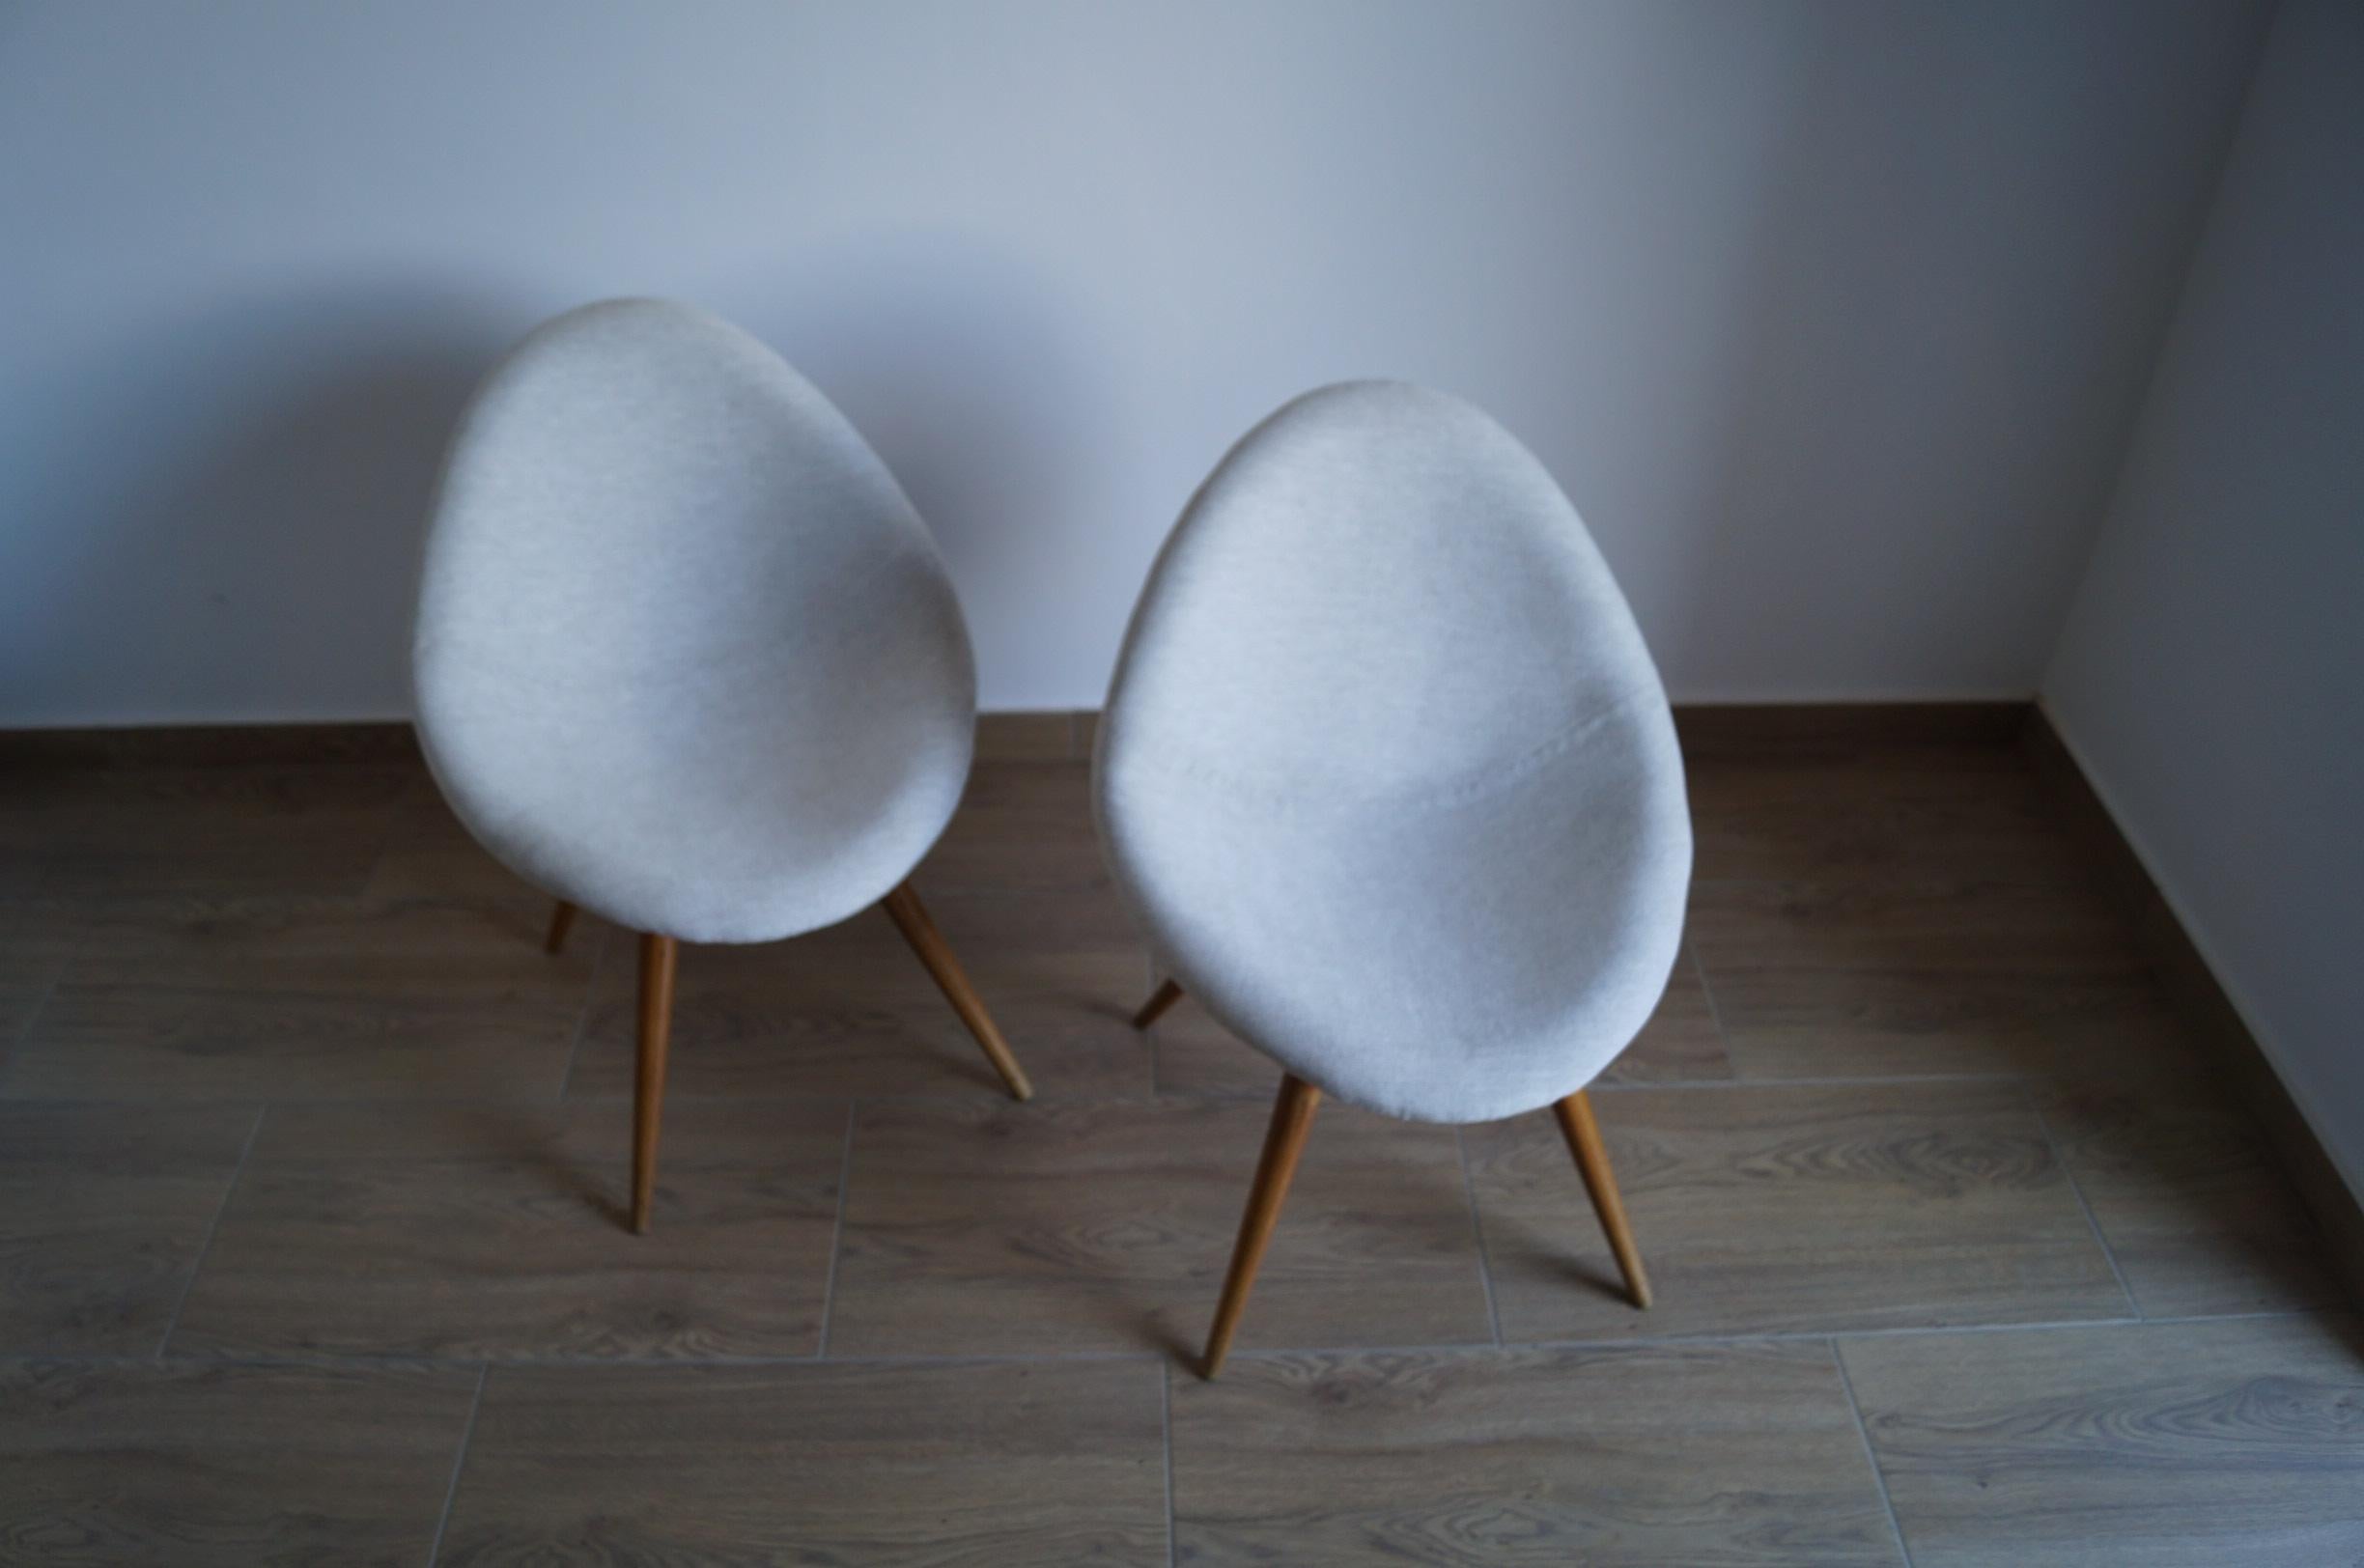 Art Deco Sessel Shell von 1950 Tschechische Republik.
Jedes Möbelstück, das unsere Werkstatt verlässt, wird von Anfang bis Ende einer manuellen Renovierung unterzogen, um den ursprünglichen Zustand von vor vielen Jahren wiederherzustellen (es wurde